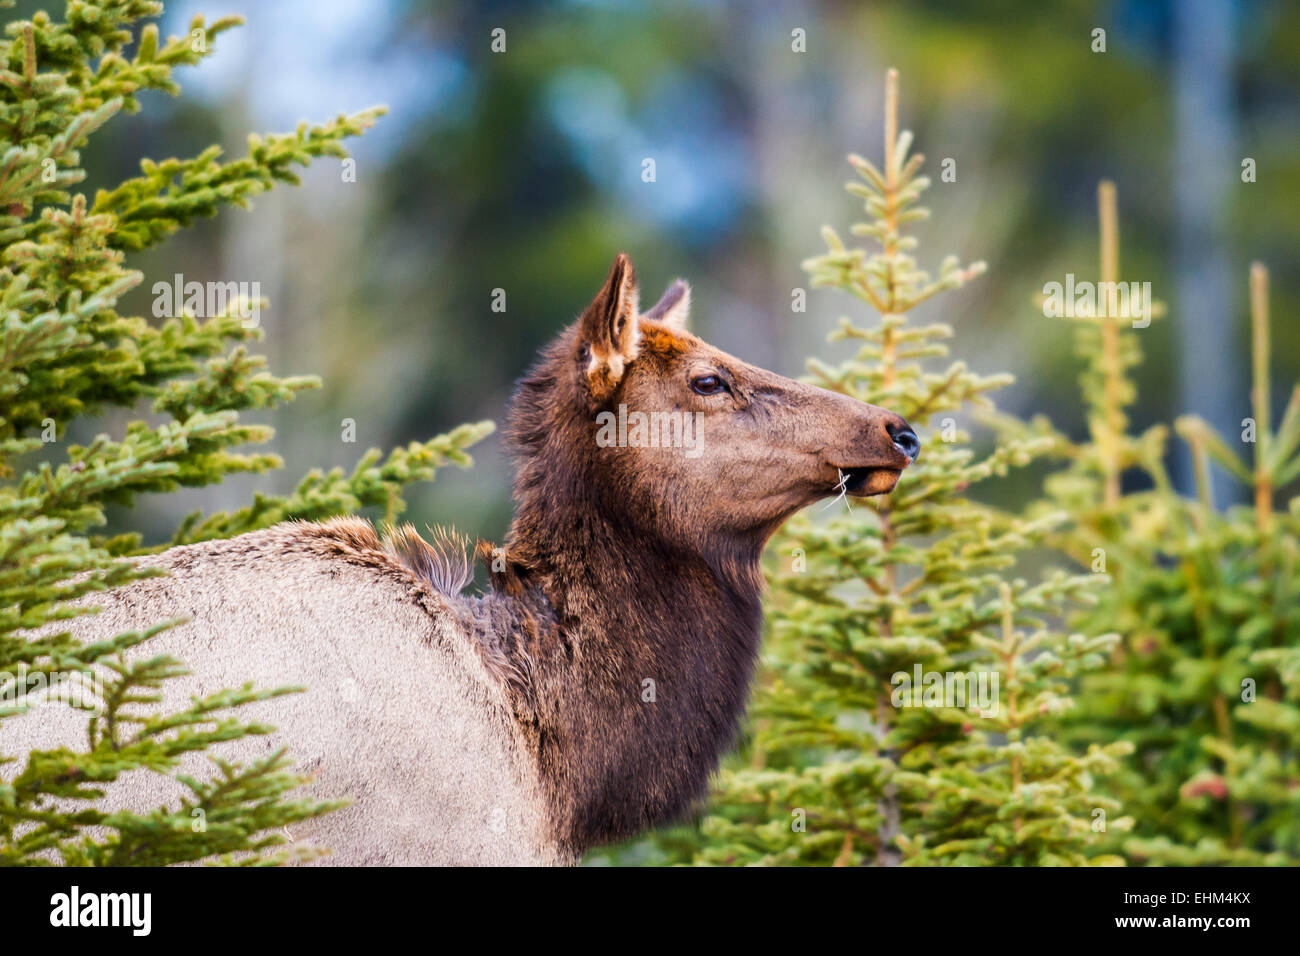 Wild mountain Elk, Banff National Park Alberta Canada Stock Photo